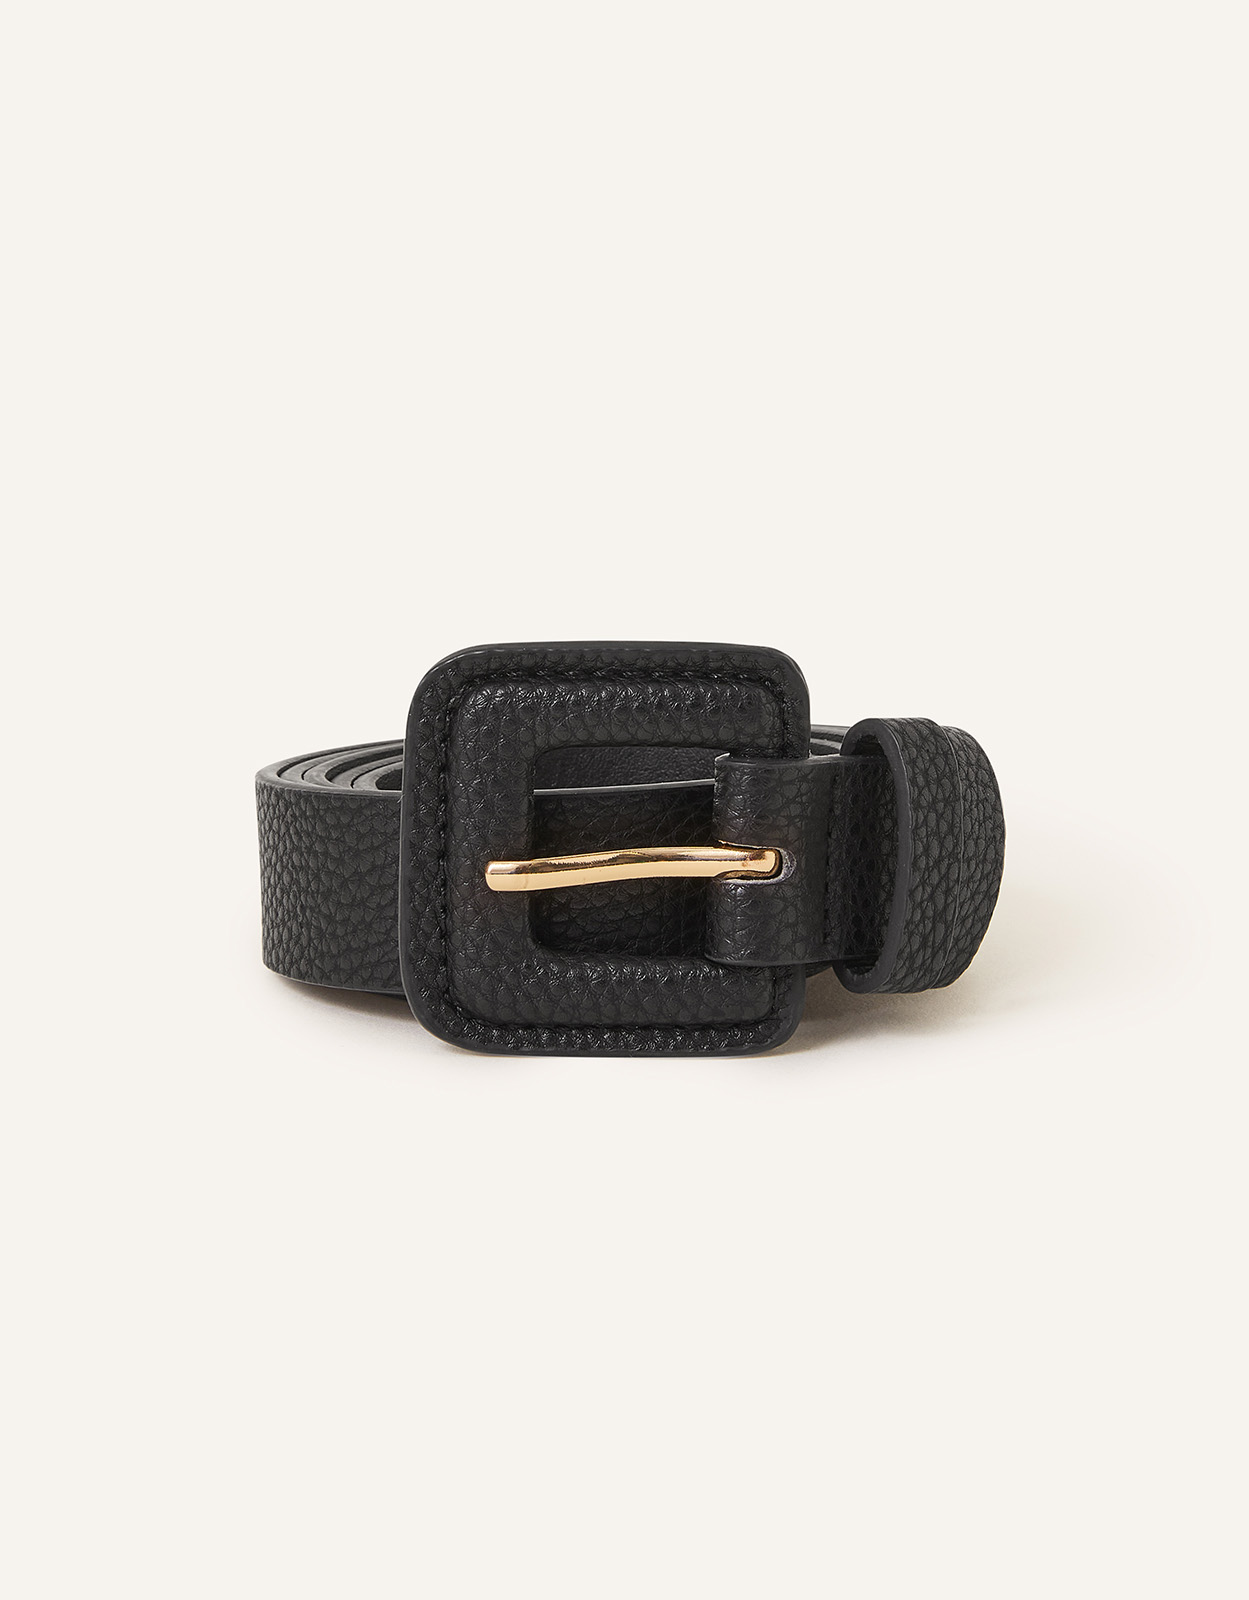 Accessorize Women's Square Buckle Belt Black, Size: L